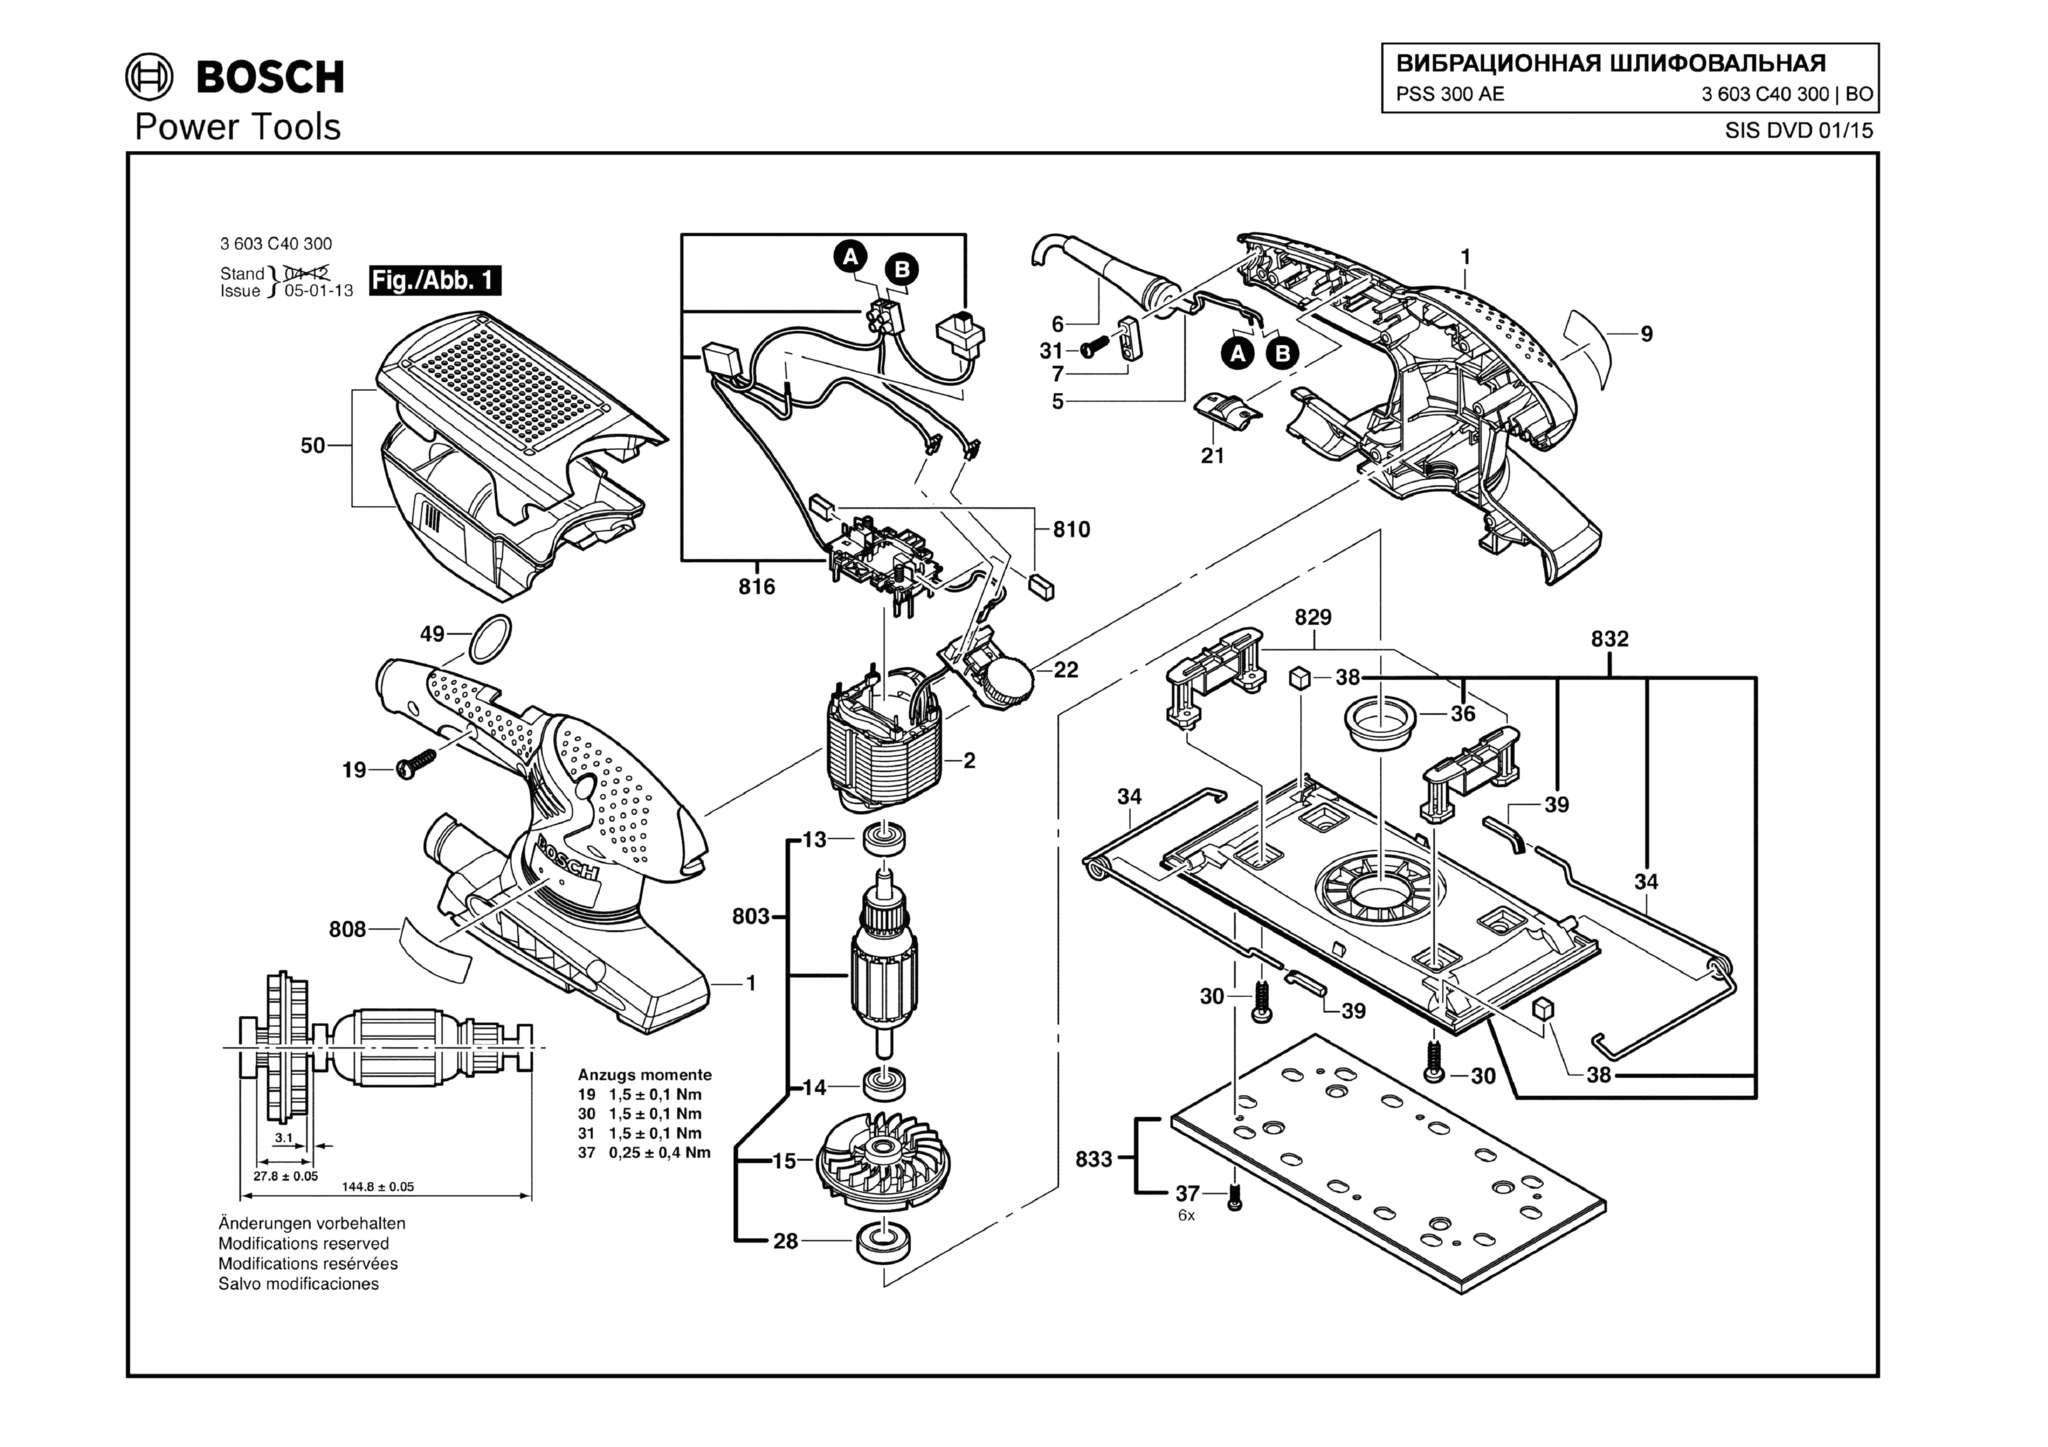 Запчасти, схема и деталировка Bosch PSS 300 AE (ТИП 3603C40300)